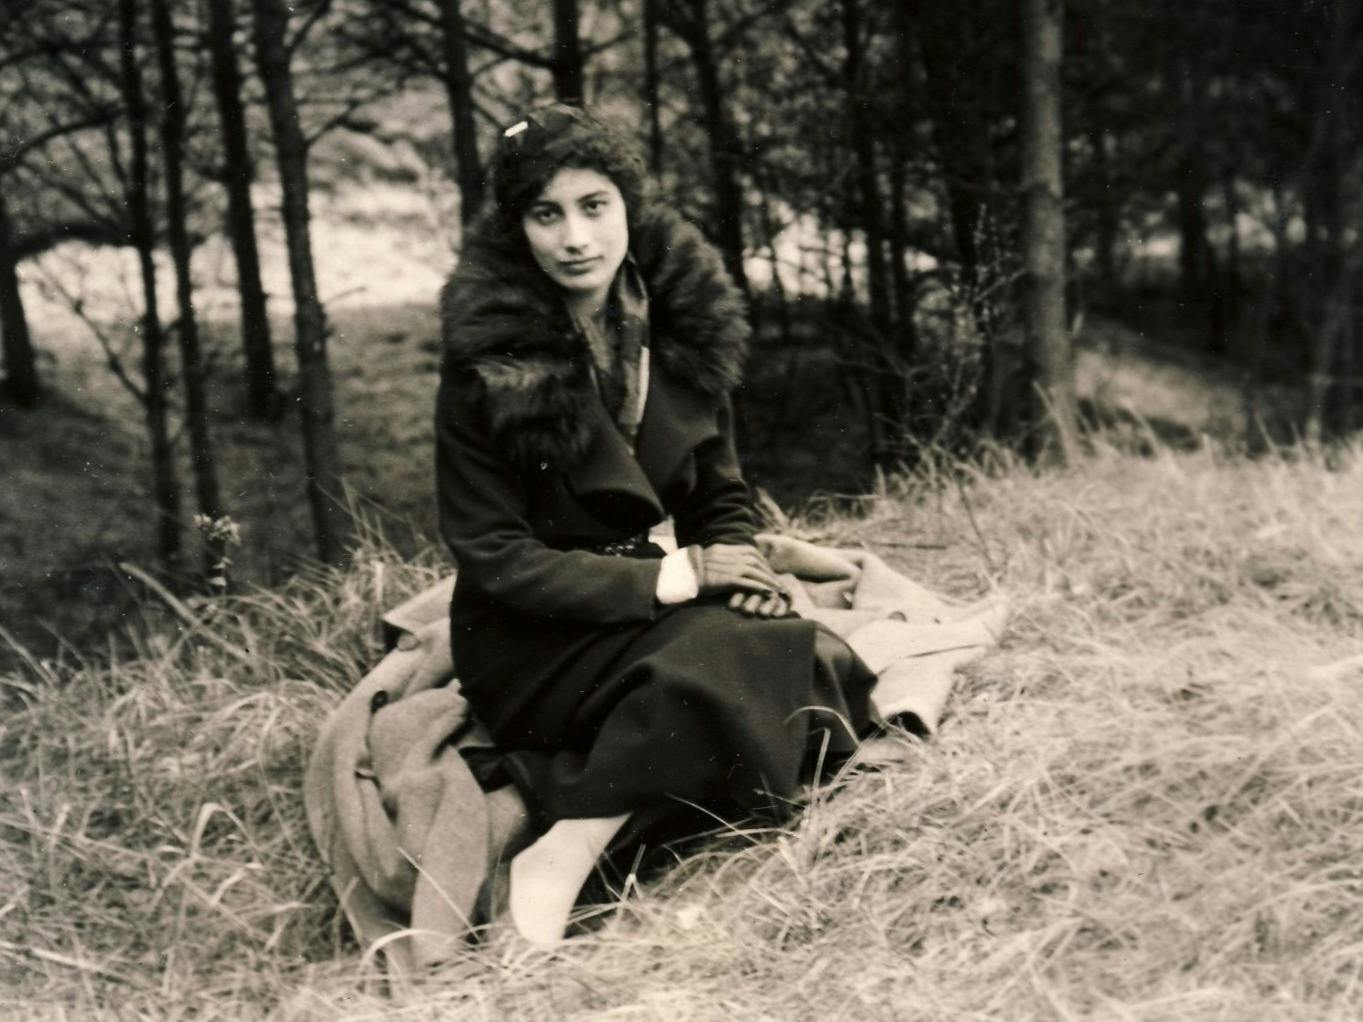 Noor Inayat Khan at dunes near Den Haag, Netherlands, 1934 (Nekbakht Foundation)